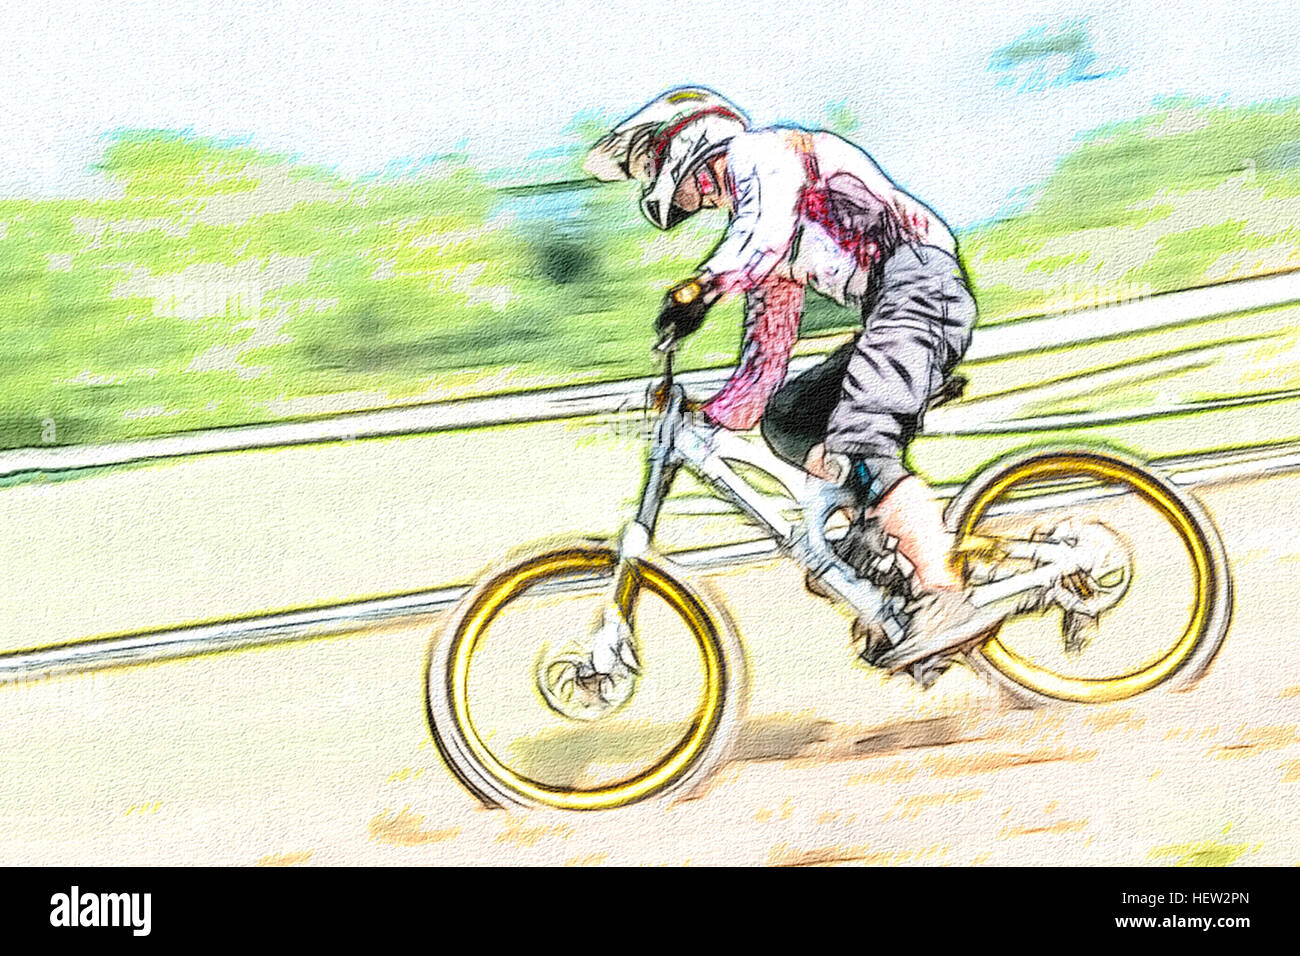 Downhill Biker im Wettbewerb Zeichenstil Stockfoto